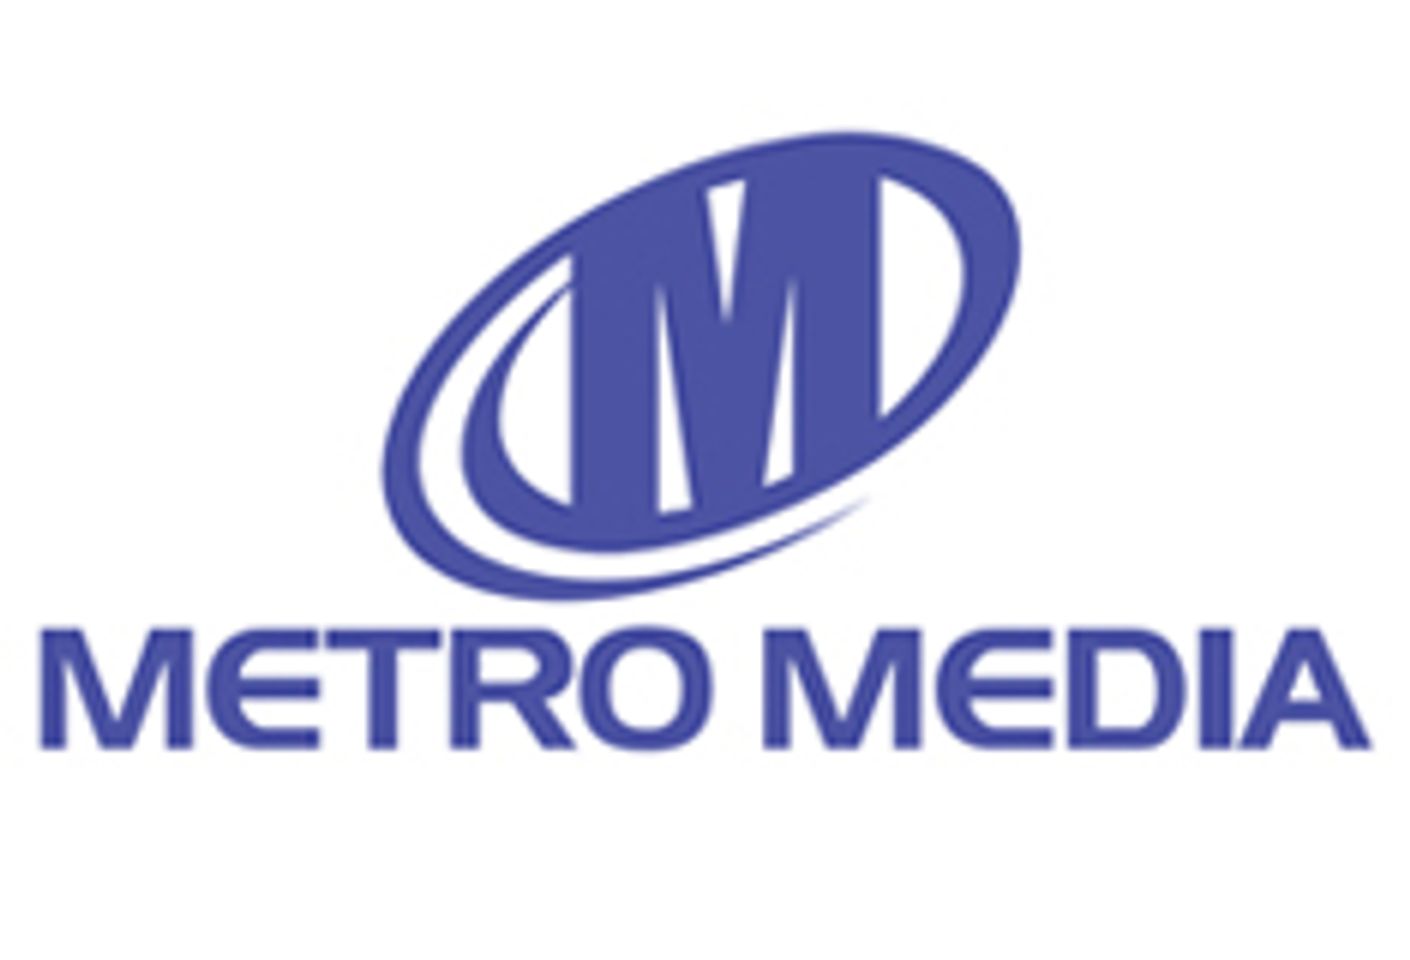 Metro Begins Re-organization Phase